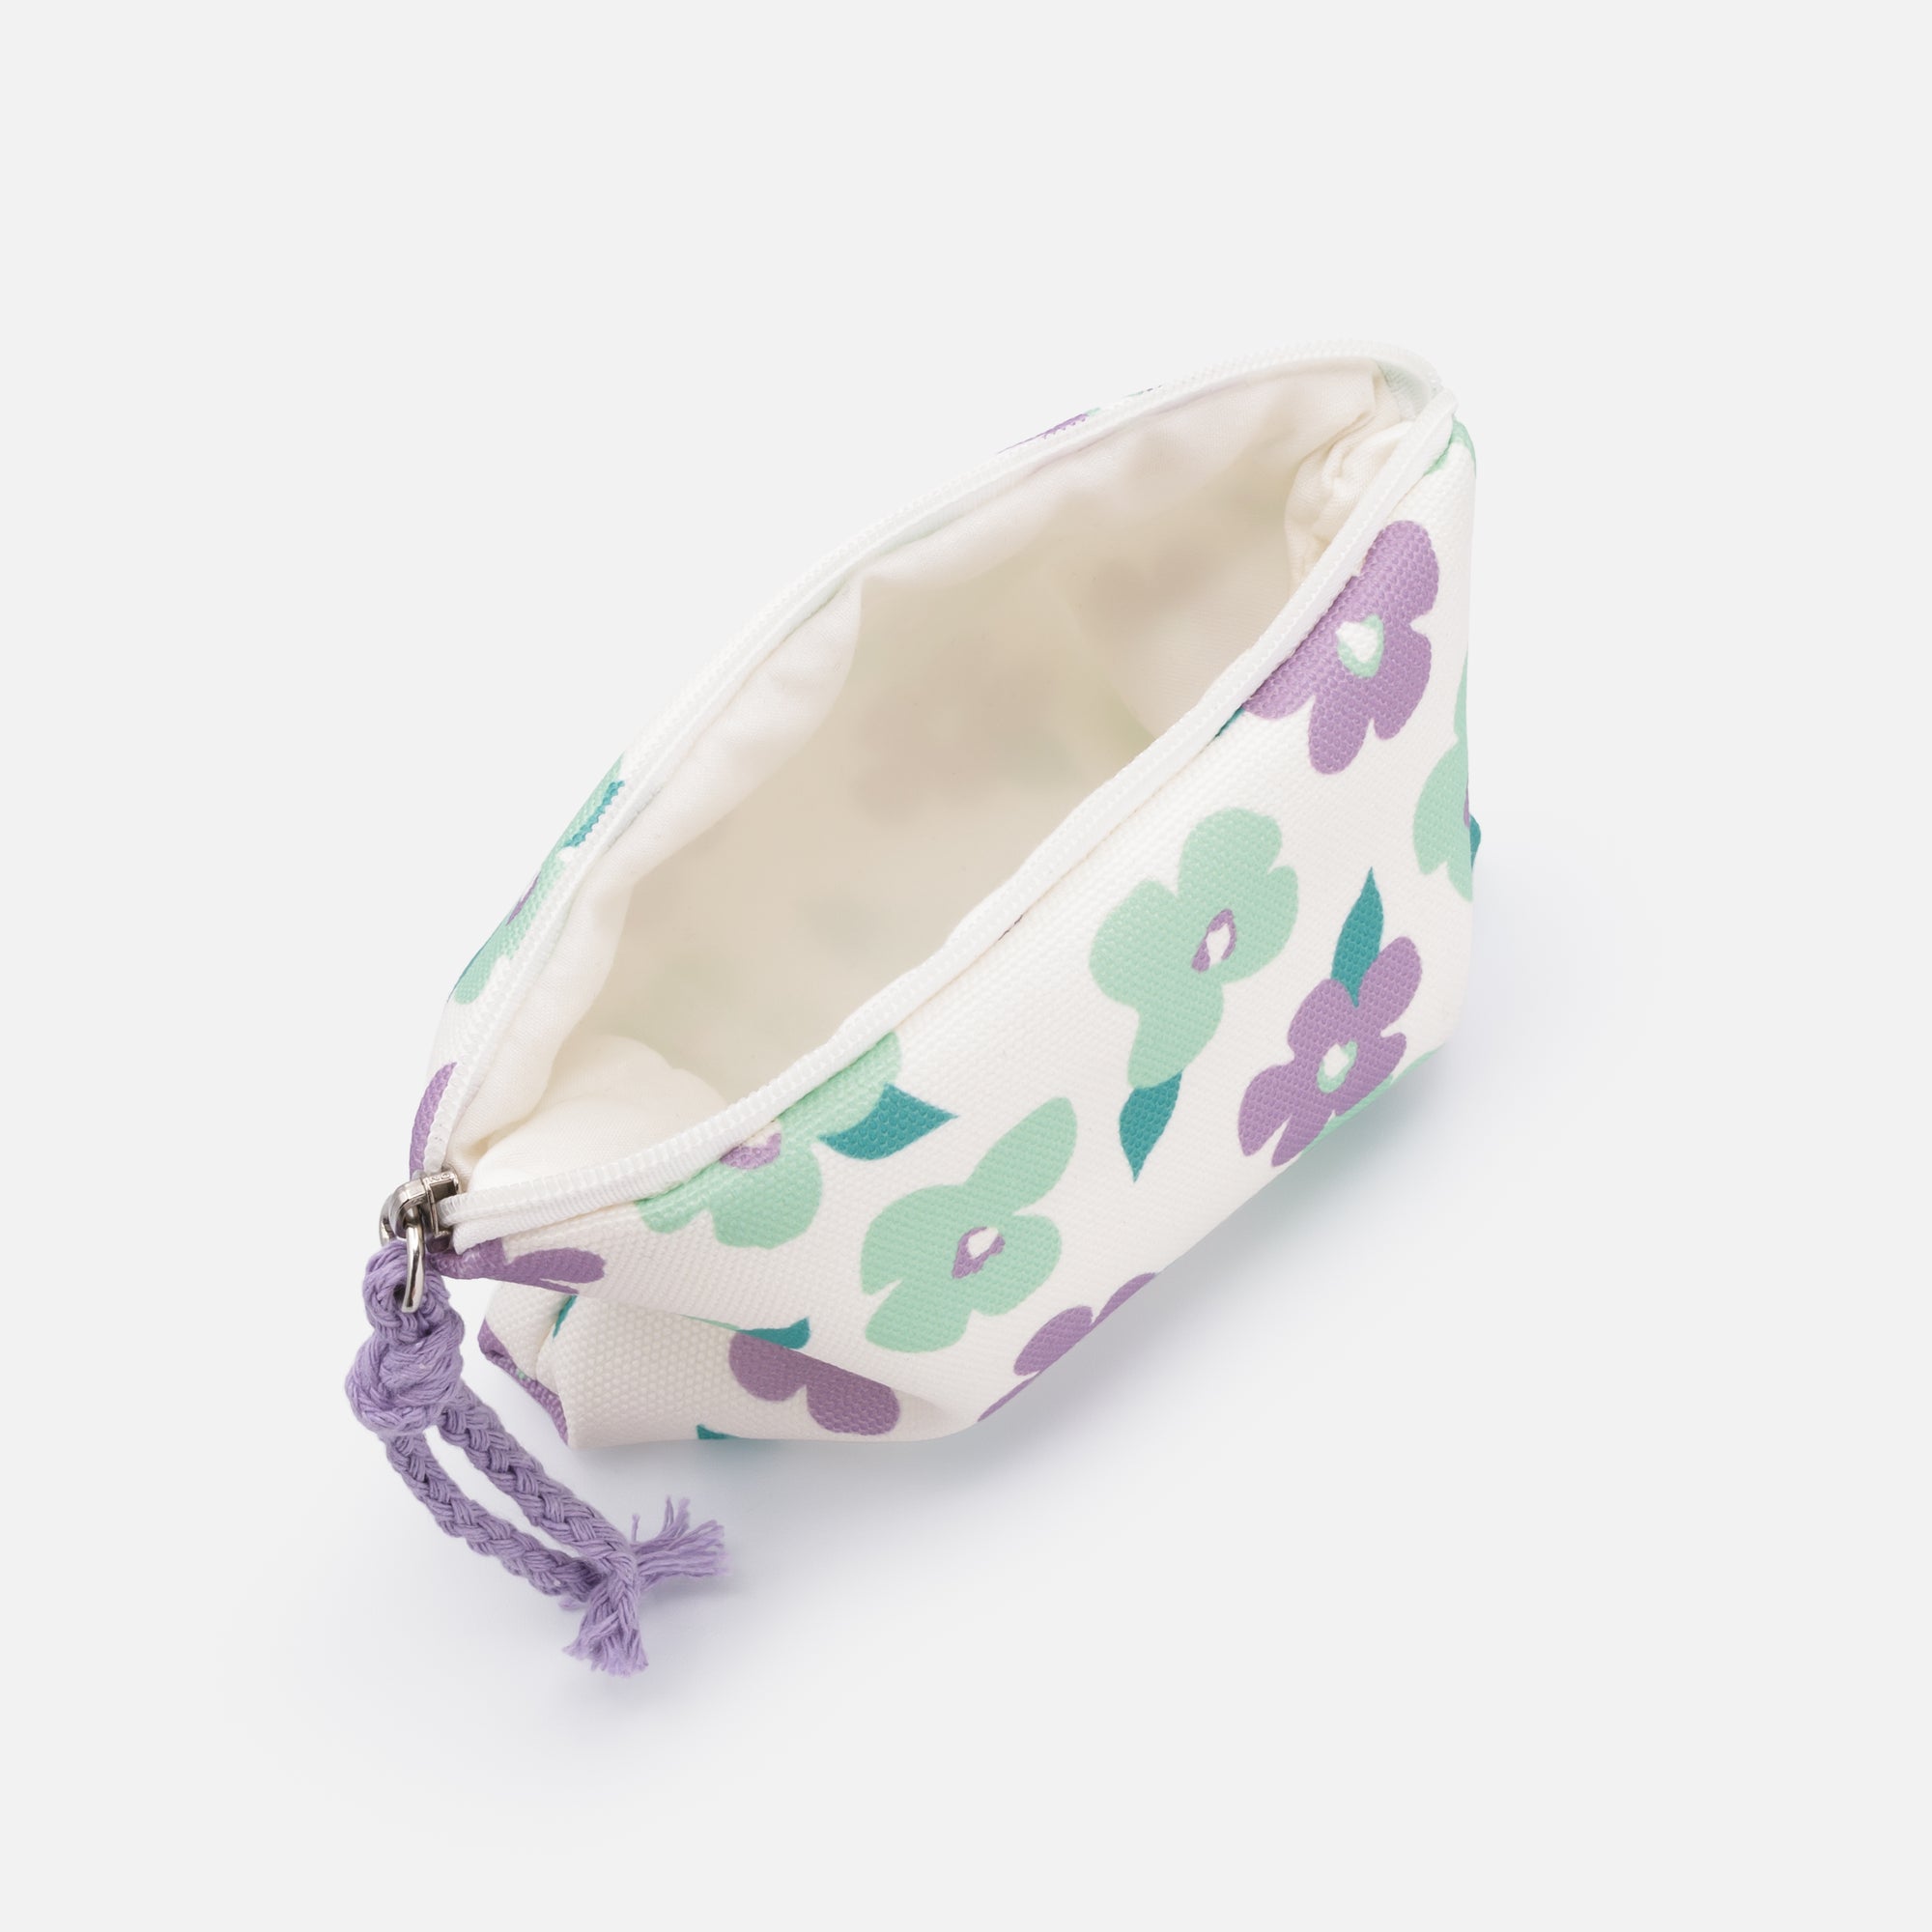 Petite pochette à cosmétiques fleurs lilas et vert pâle